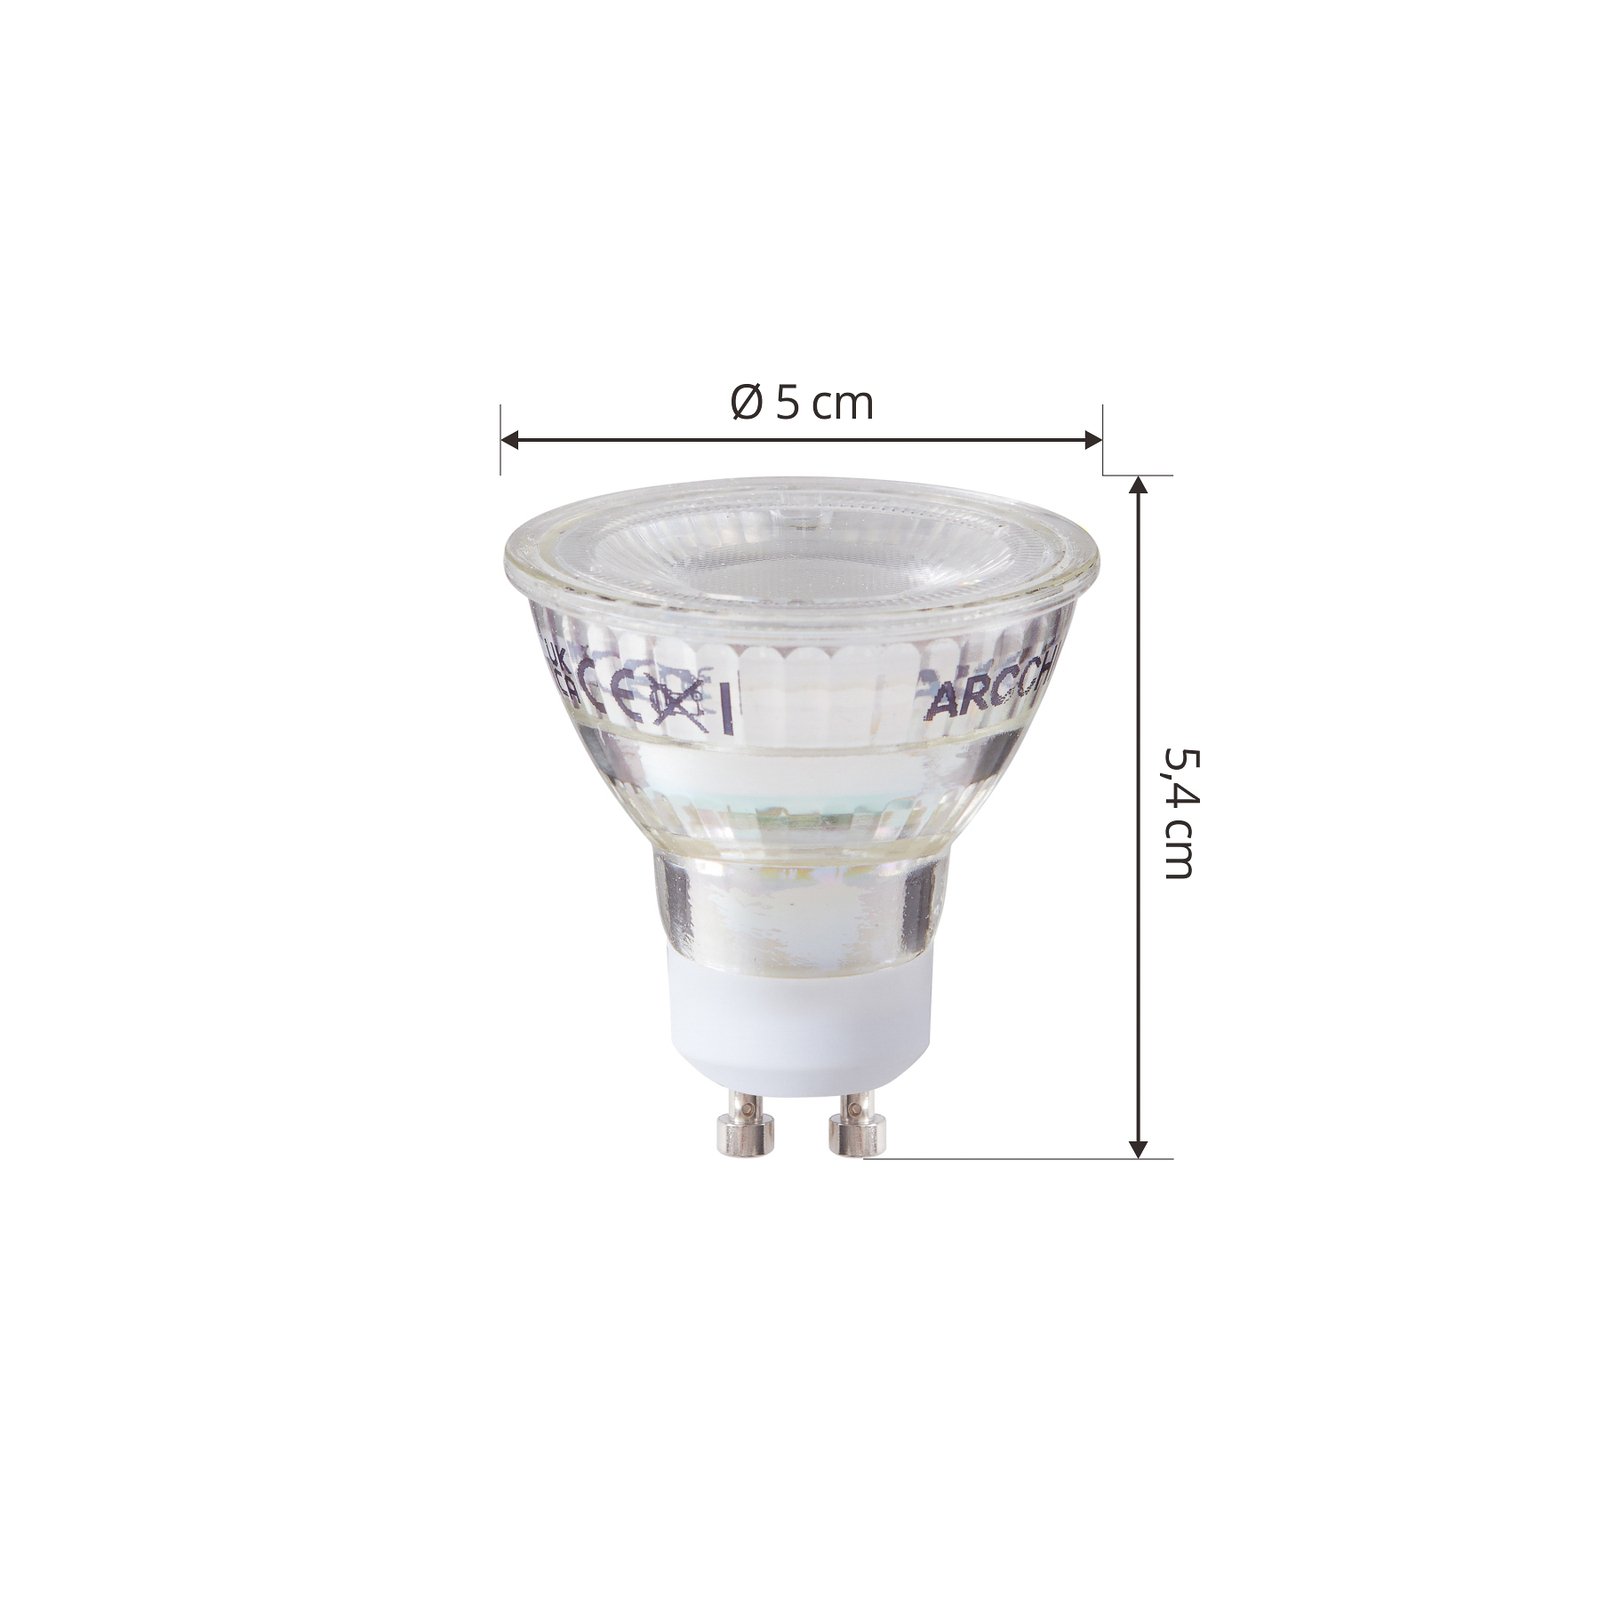 Arcchio LED-pære GU10 2,5W 6500K 450lm glass sett med 2 stk